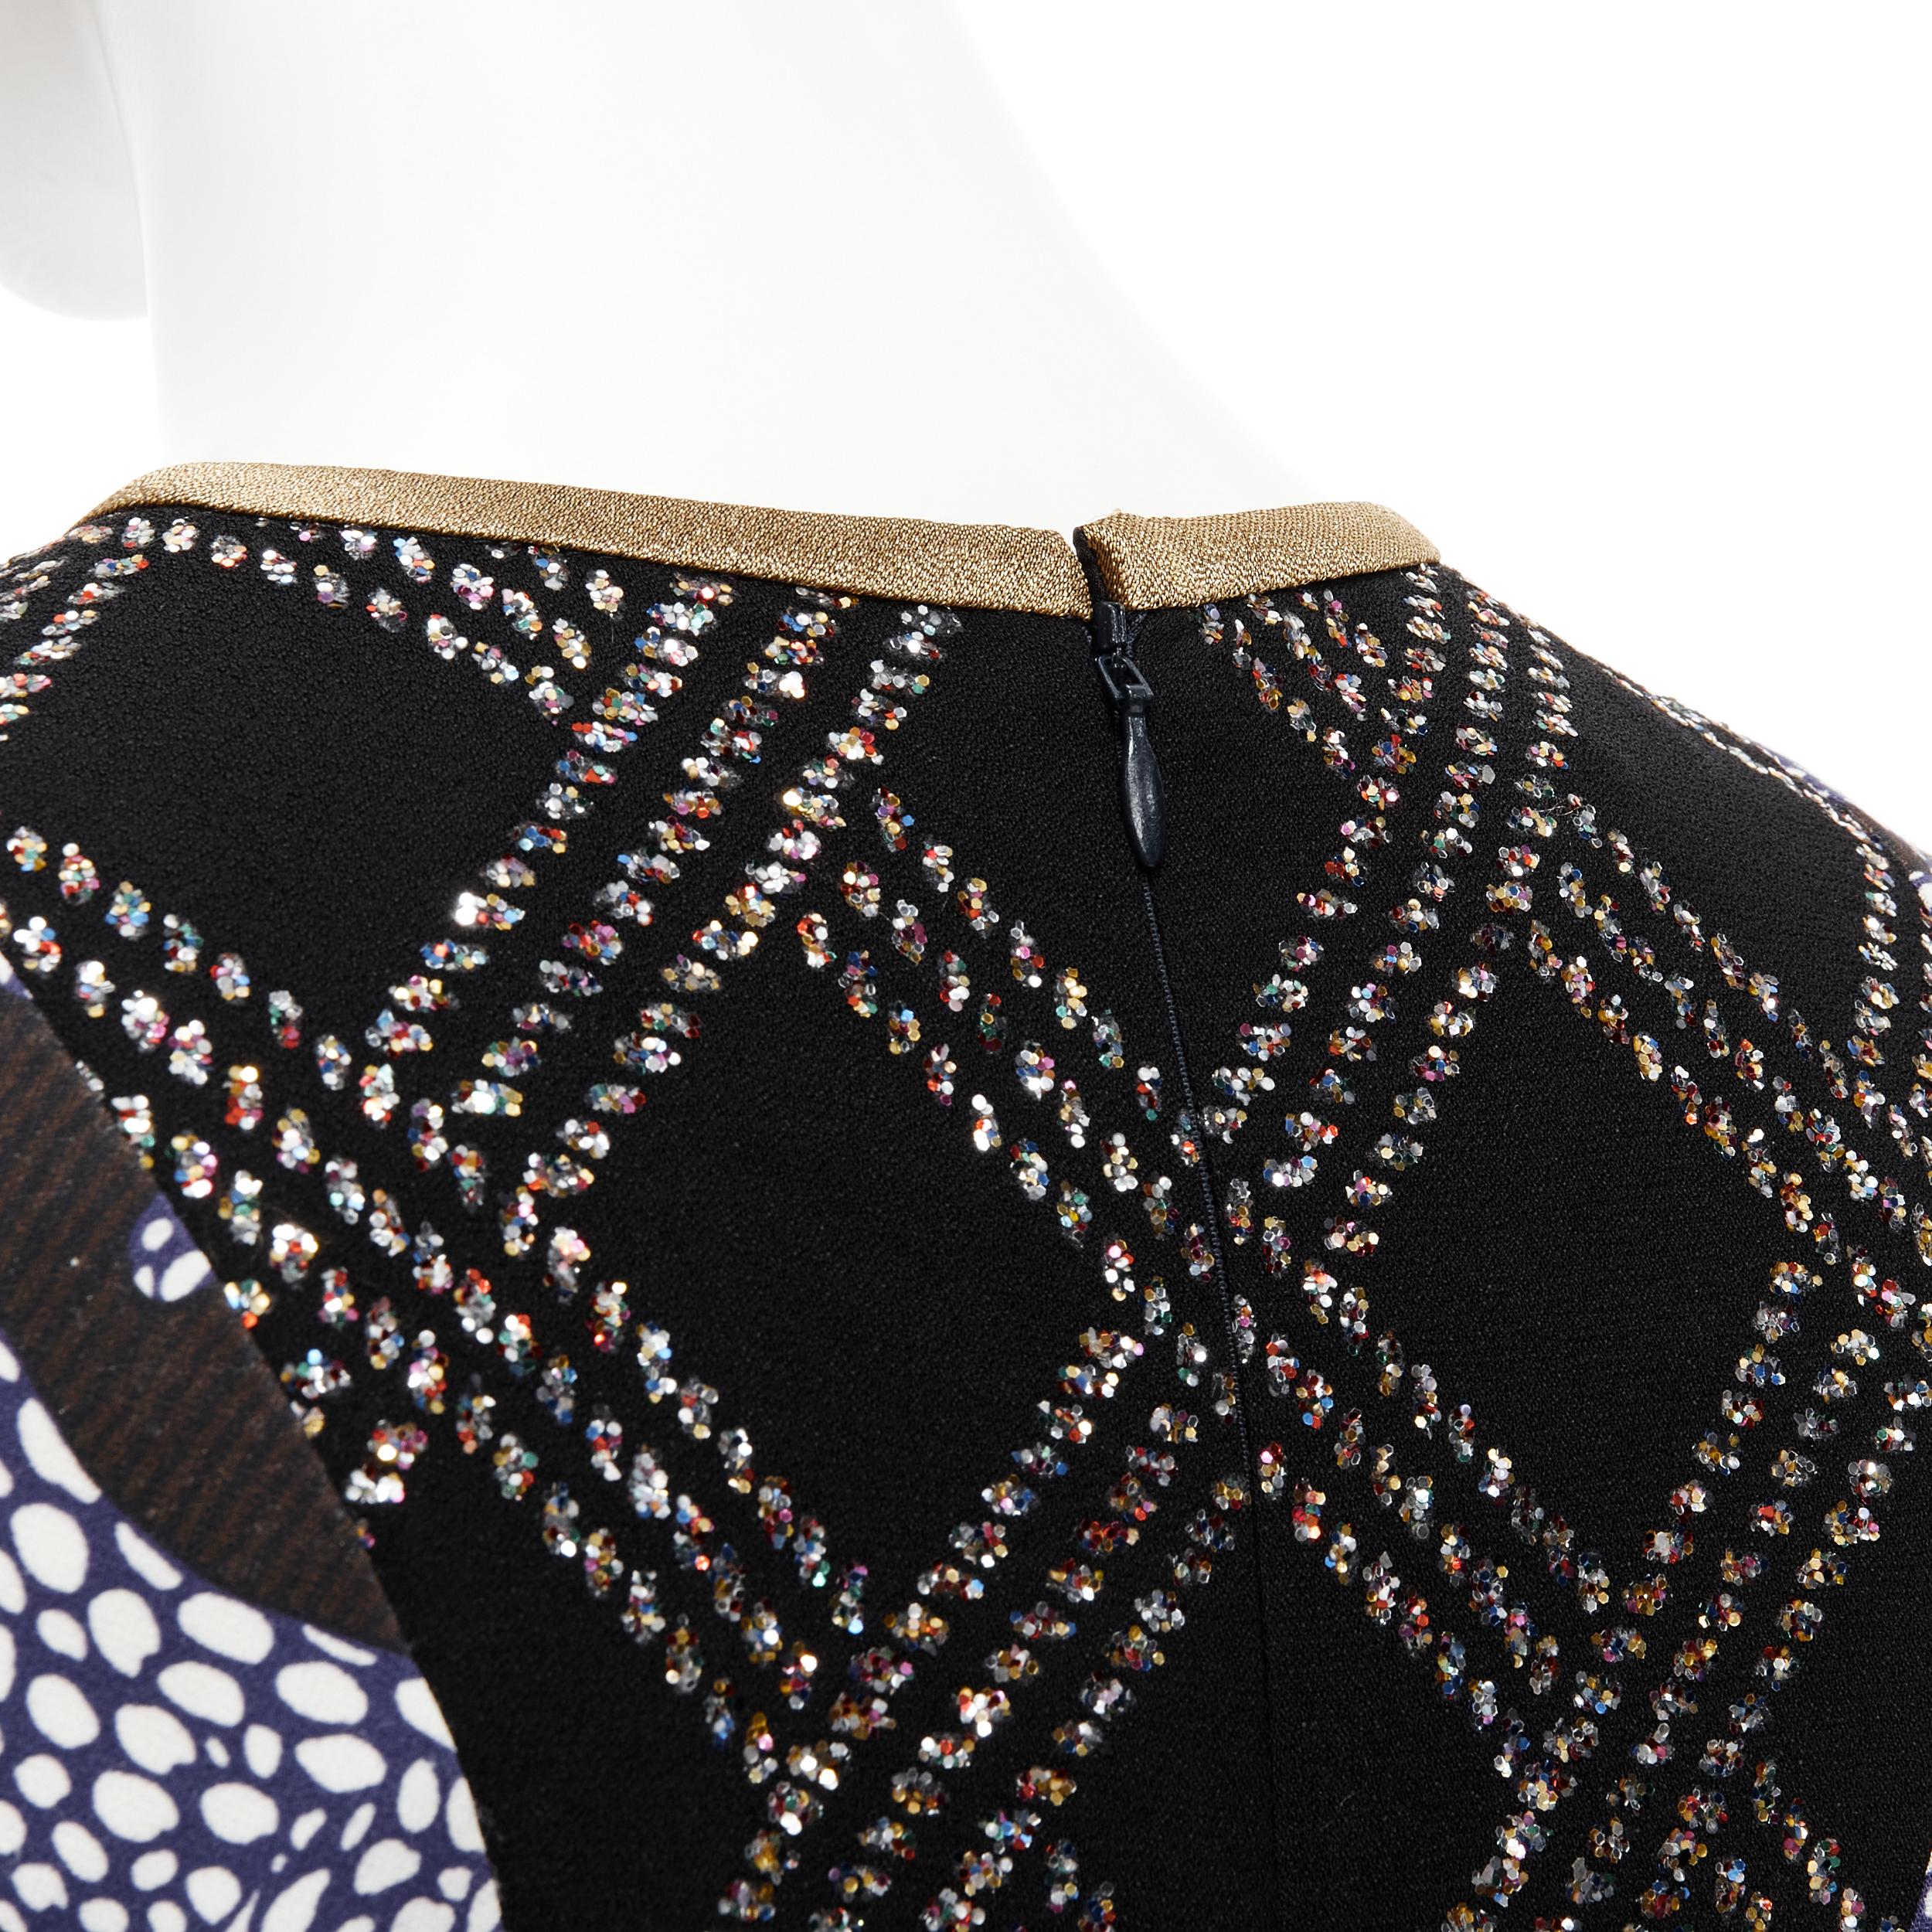 DRIES VAN NOTEN black glitter grid jacquard print illusion layered dress FR36 XS 3